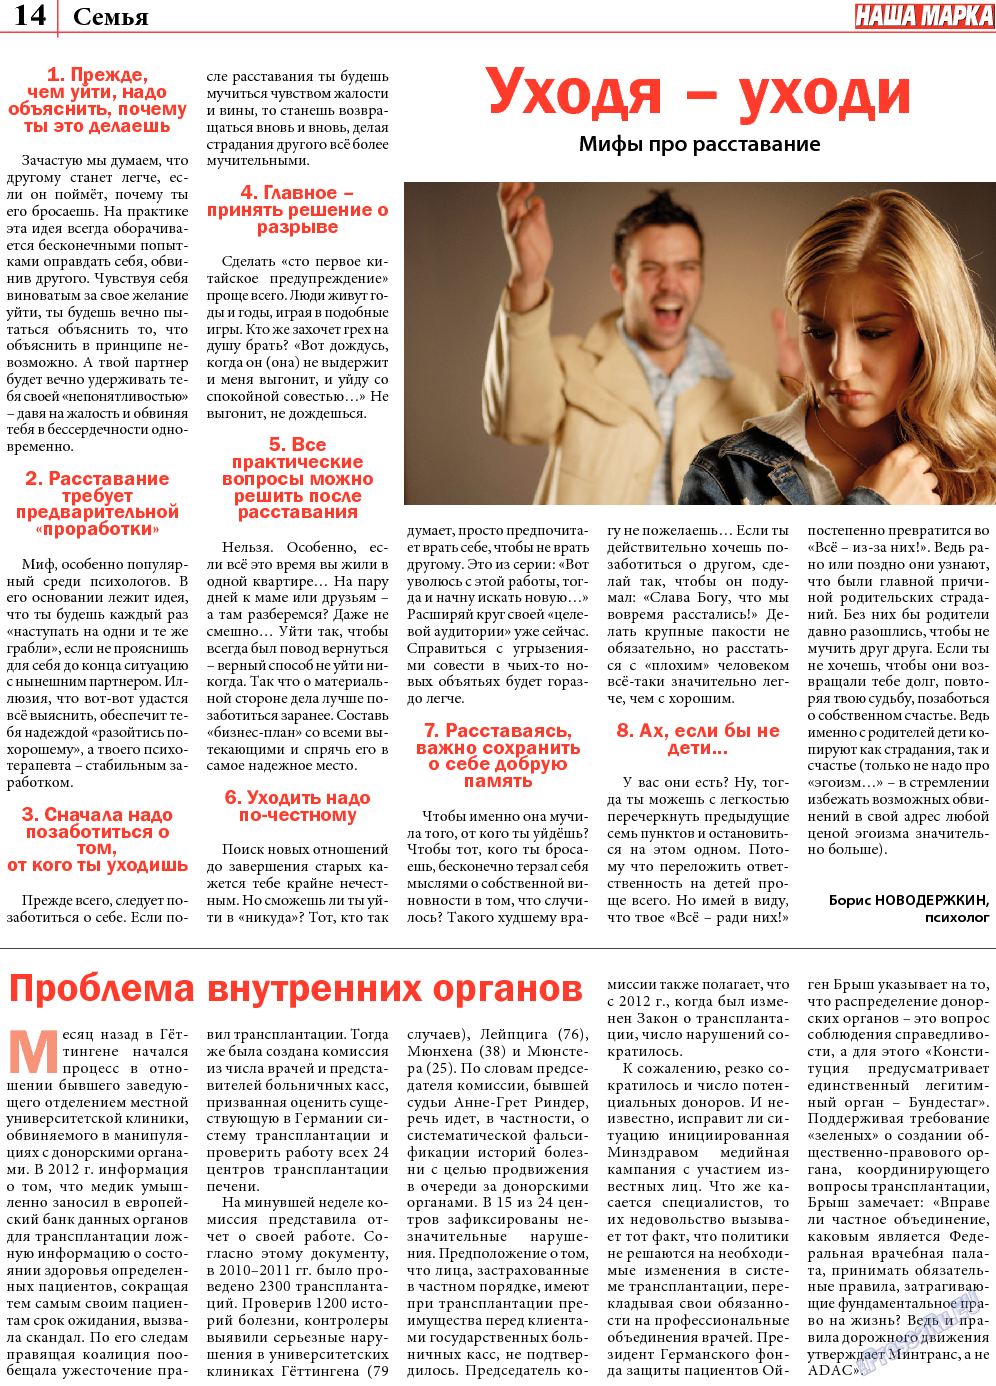 Наша марка (газета). 2013 год, номер 9, стр. 14